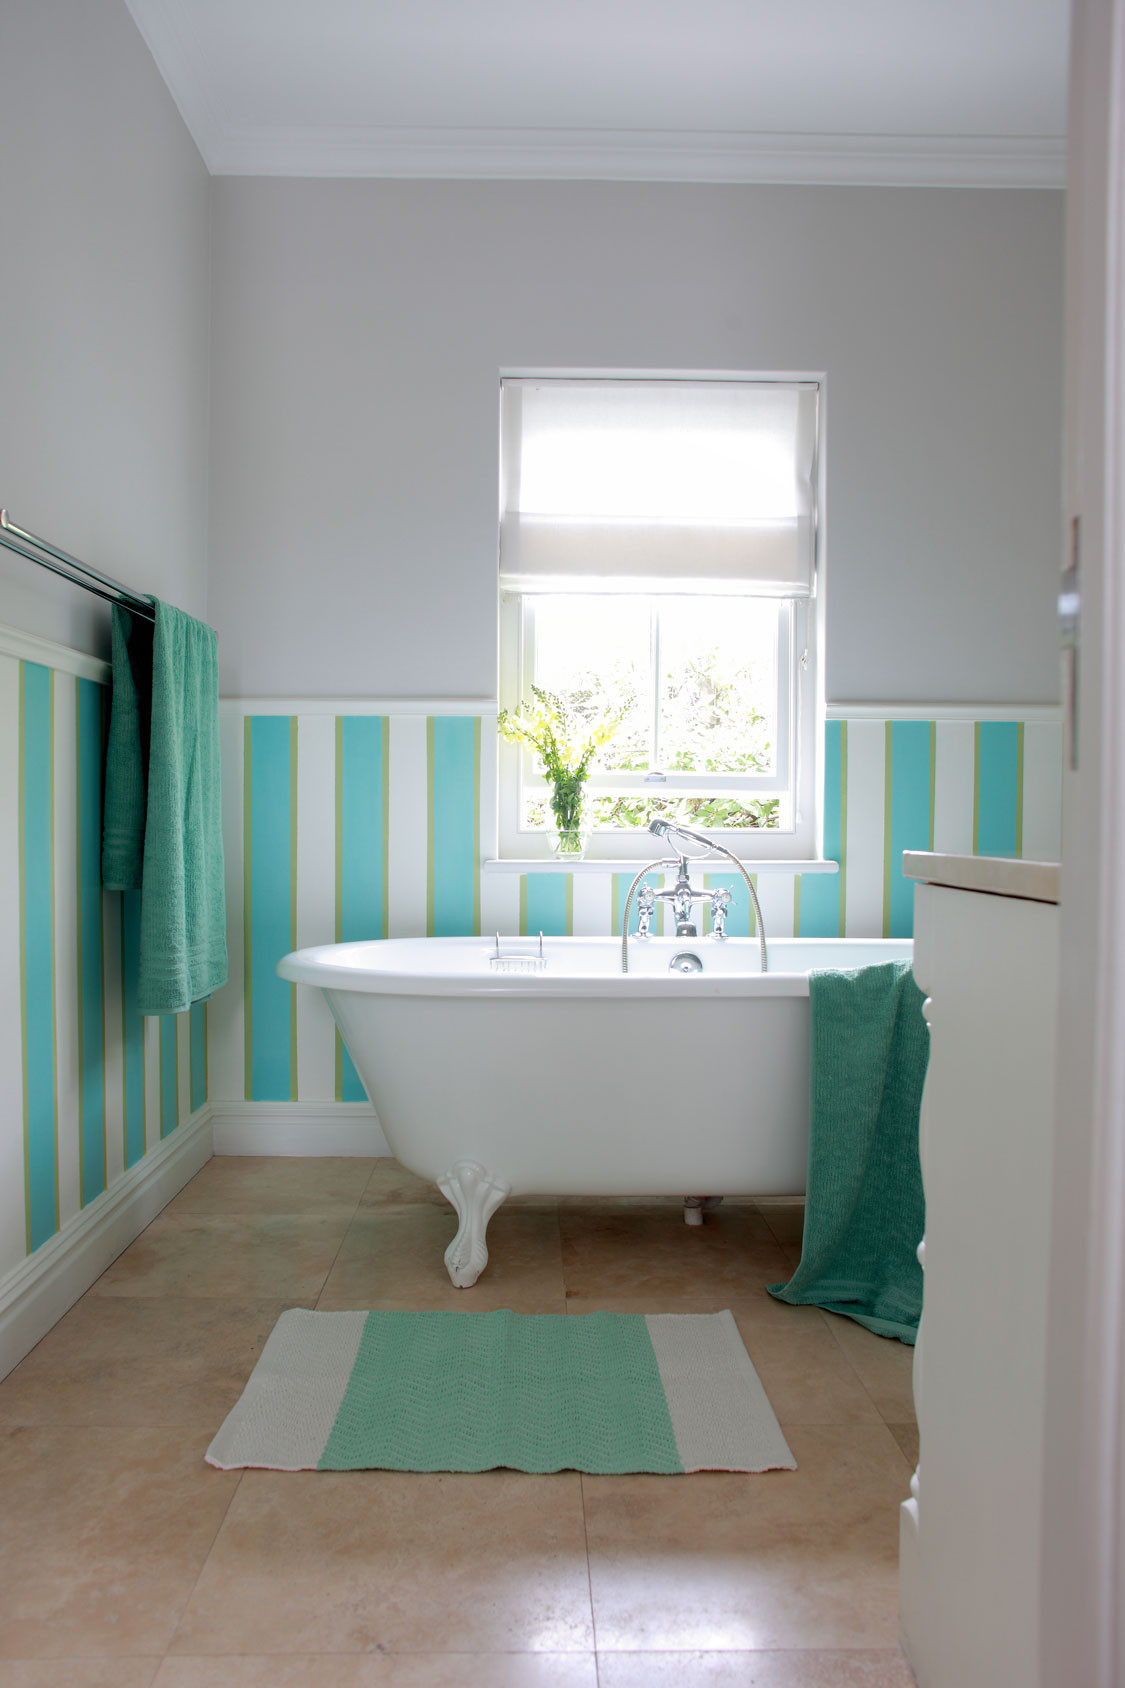 Home Goods Bathroom Decor
 10 Easy bathroom decor ideas